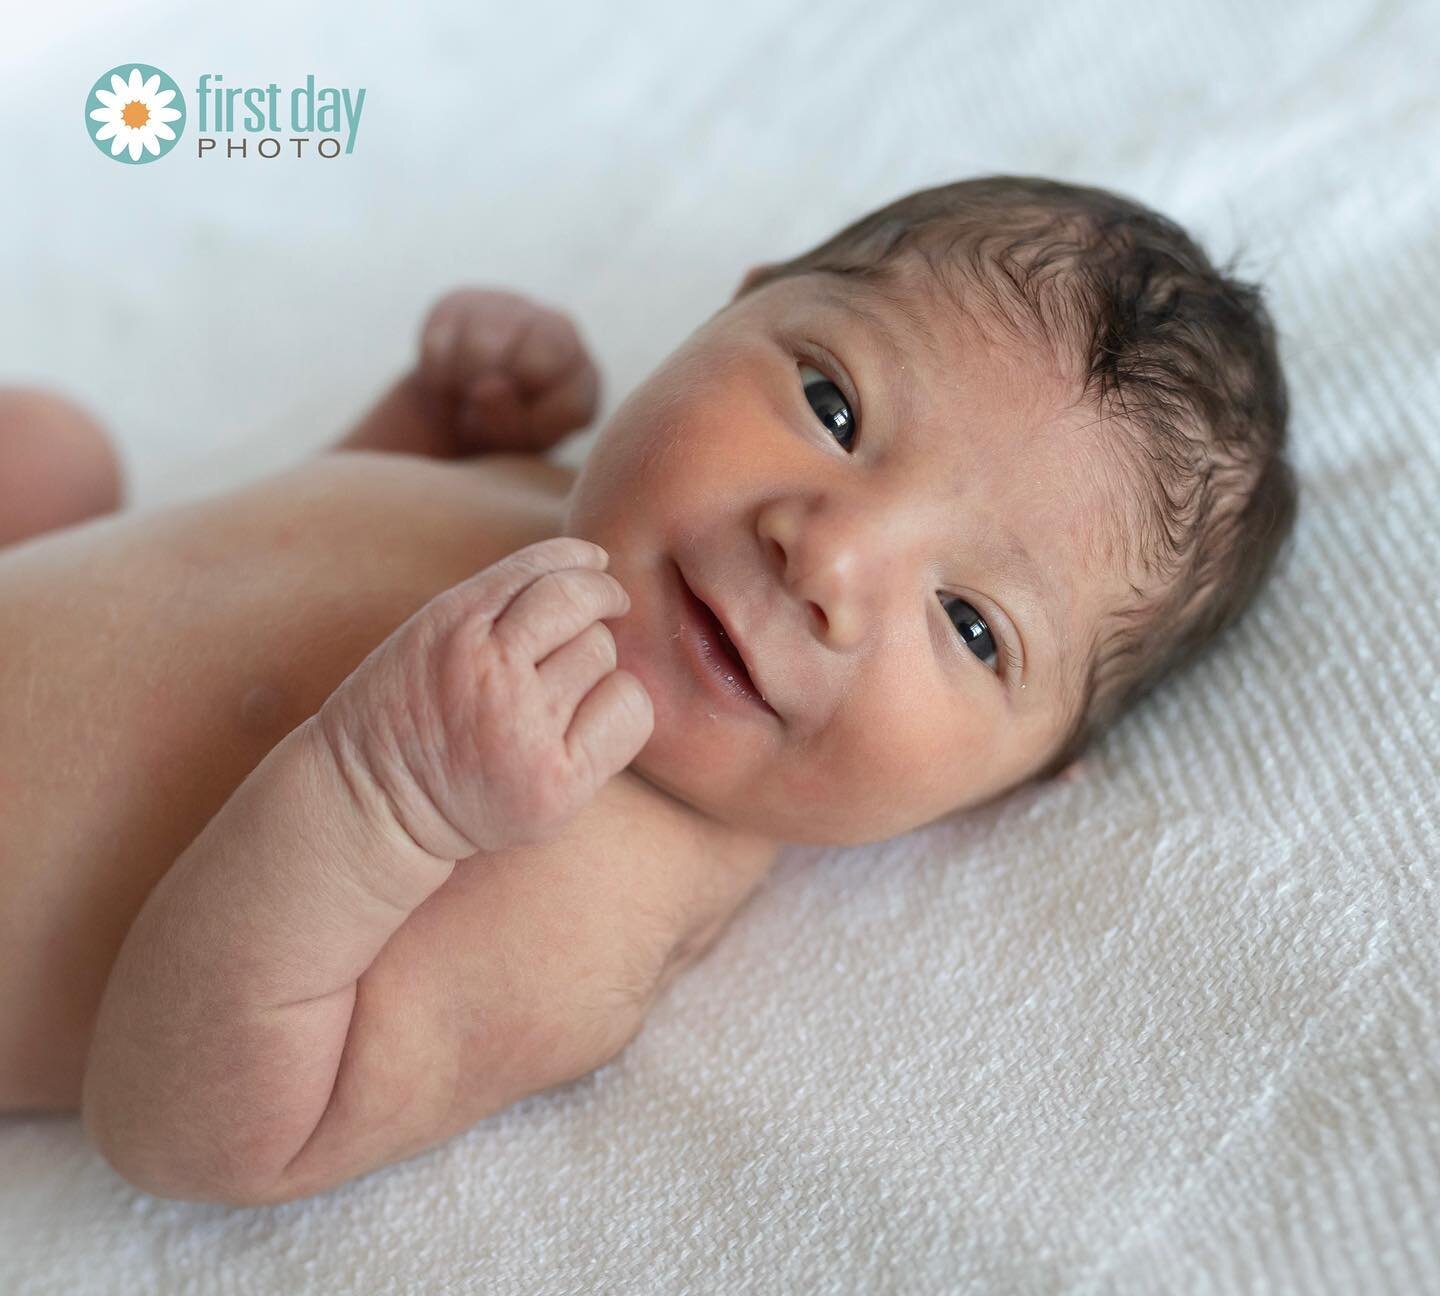 One day old. 😍
#firstdayphoto
www.firstdayphoto.com
.
.
.
.
.
#fresh48 #first48 #firstdayphotonewborns #newbornphotography #newbornphotographer #babyphoto #babyphotos #babyphotography #babies #cutebaby #babiesofinstagram #bundleofjoy #love #bestjobe